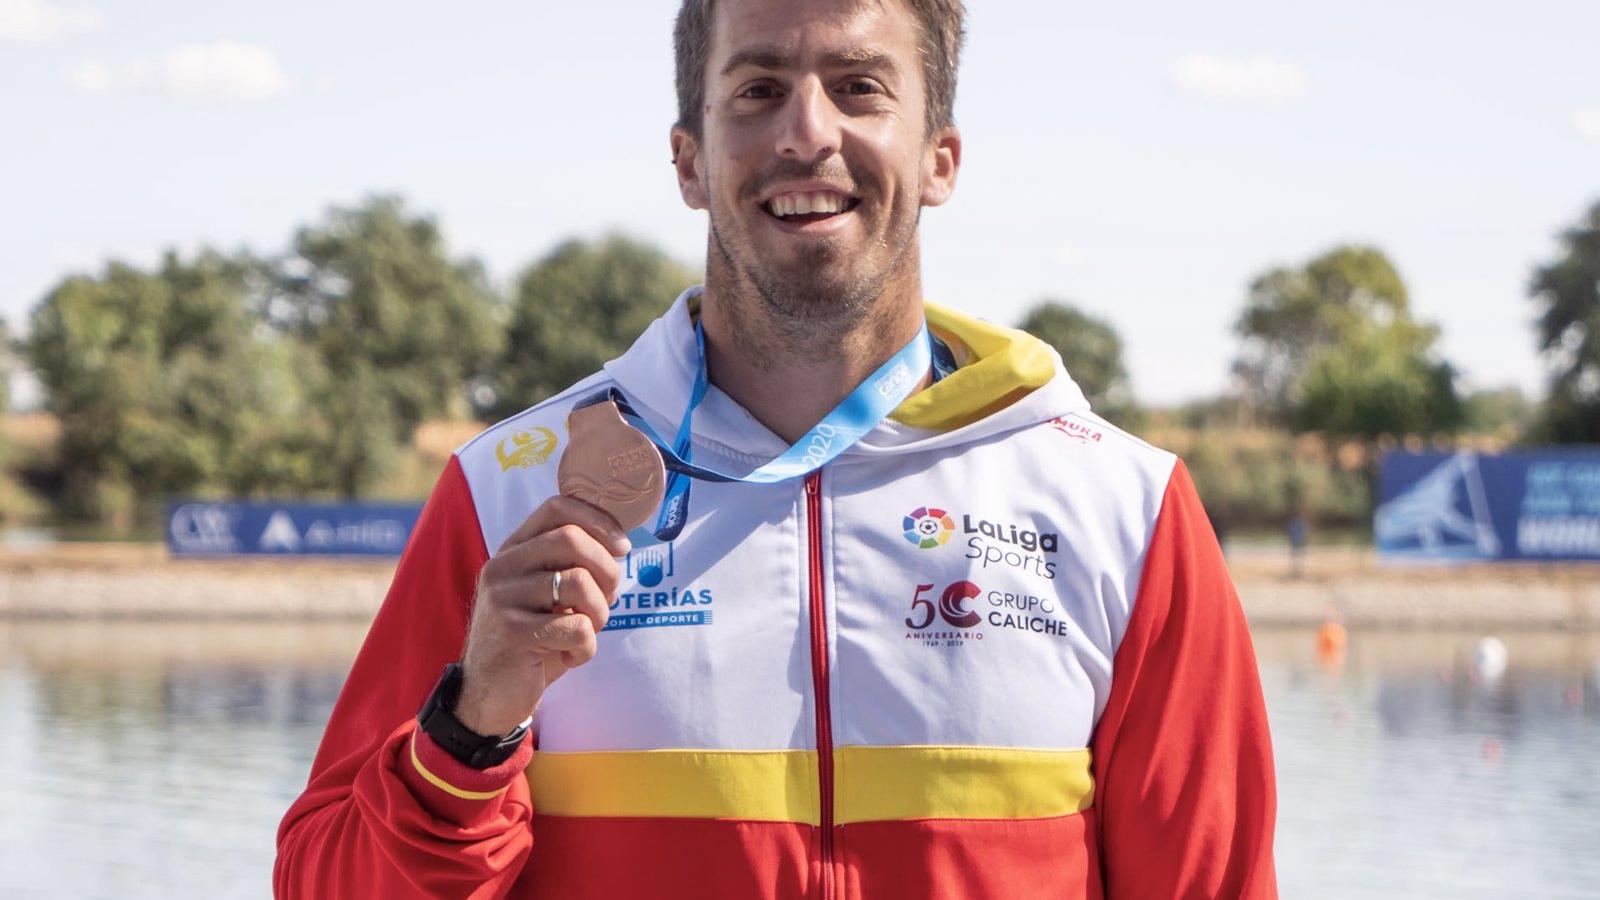 Piragüismo.- El piragüista español Sete Benavides, bronce olímpico en Londres, anuncia su retirada deportiva